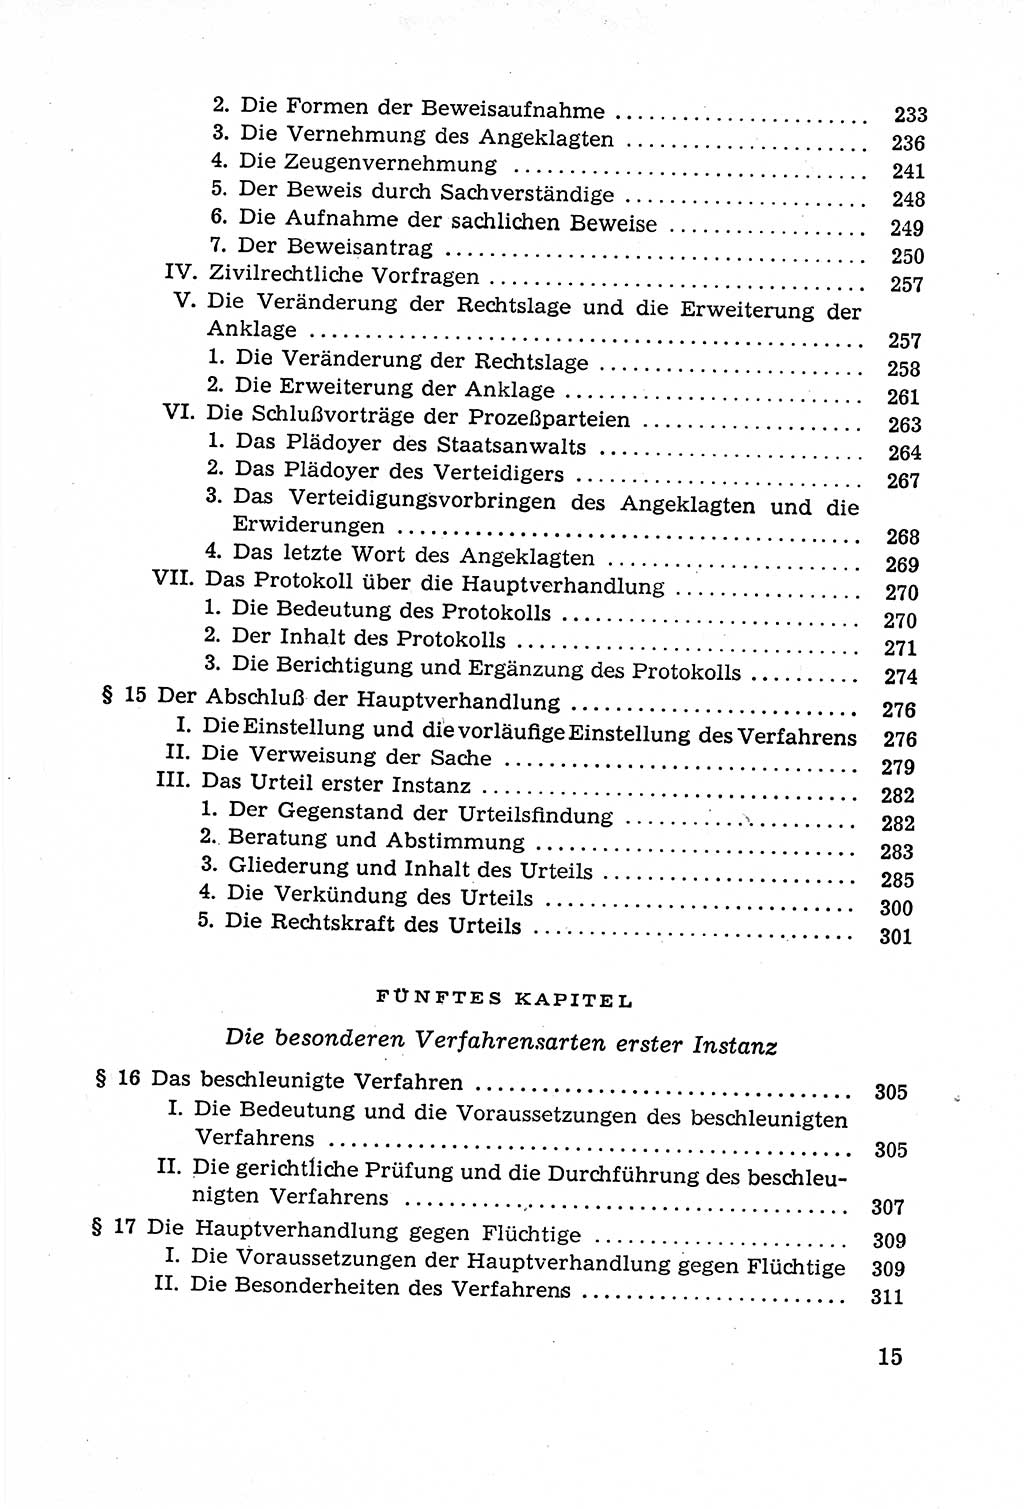 Leitfaden des Strafprozeßrechts der Deutschen Demokratischen Republik (DDR) 1959, Seite 15 (LF StPR DDR 1959, S. 15)